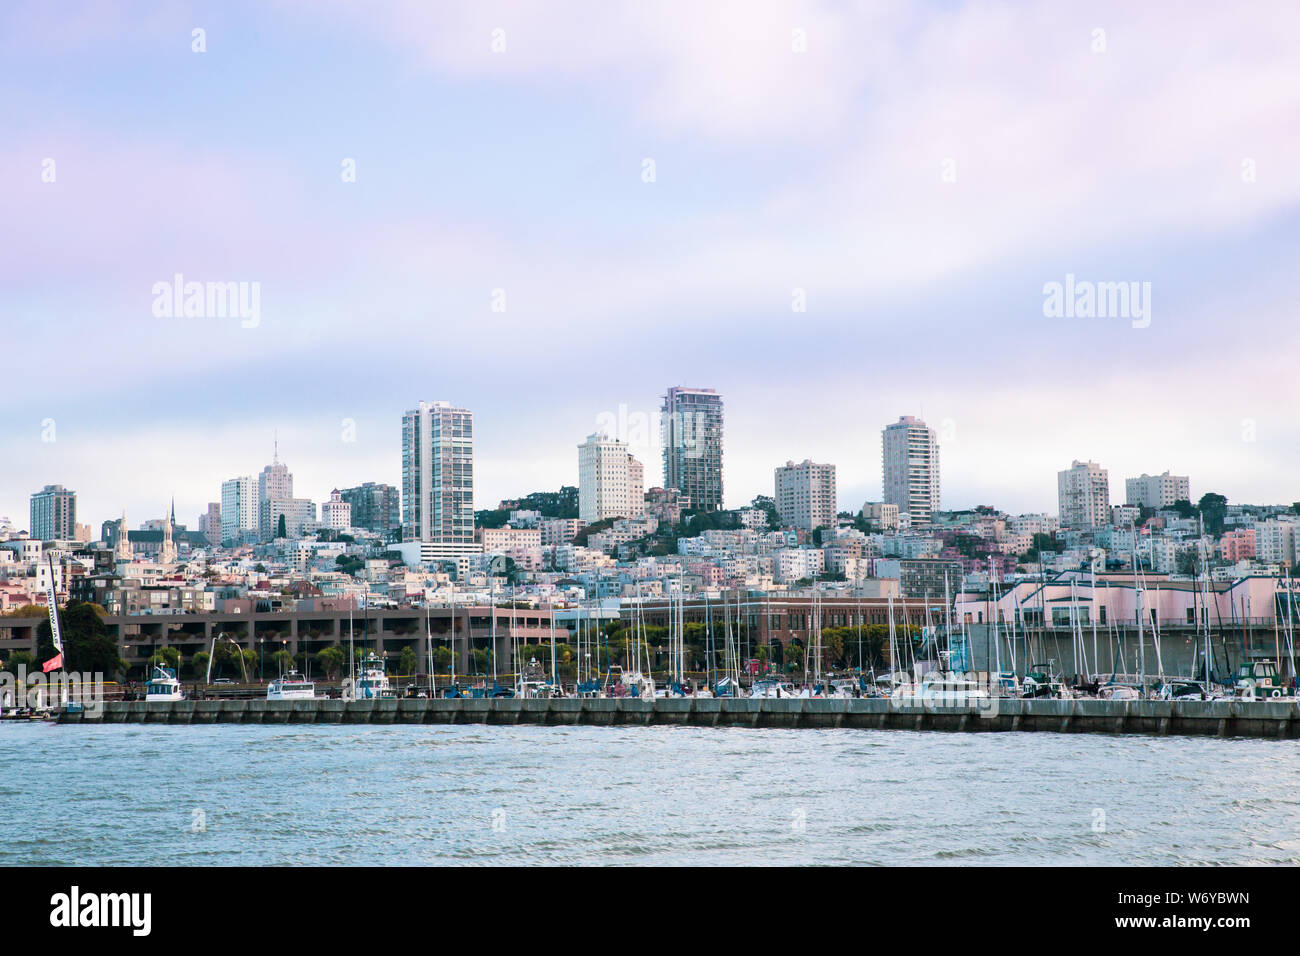 Ville de San Francisco Californie vu de la baie avec des bateaux, des docks, quai et bâtiments de skyline en vue. Banque D'Images